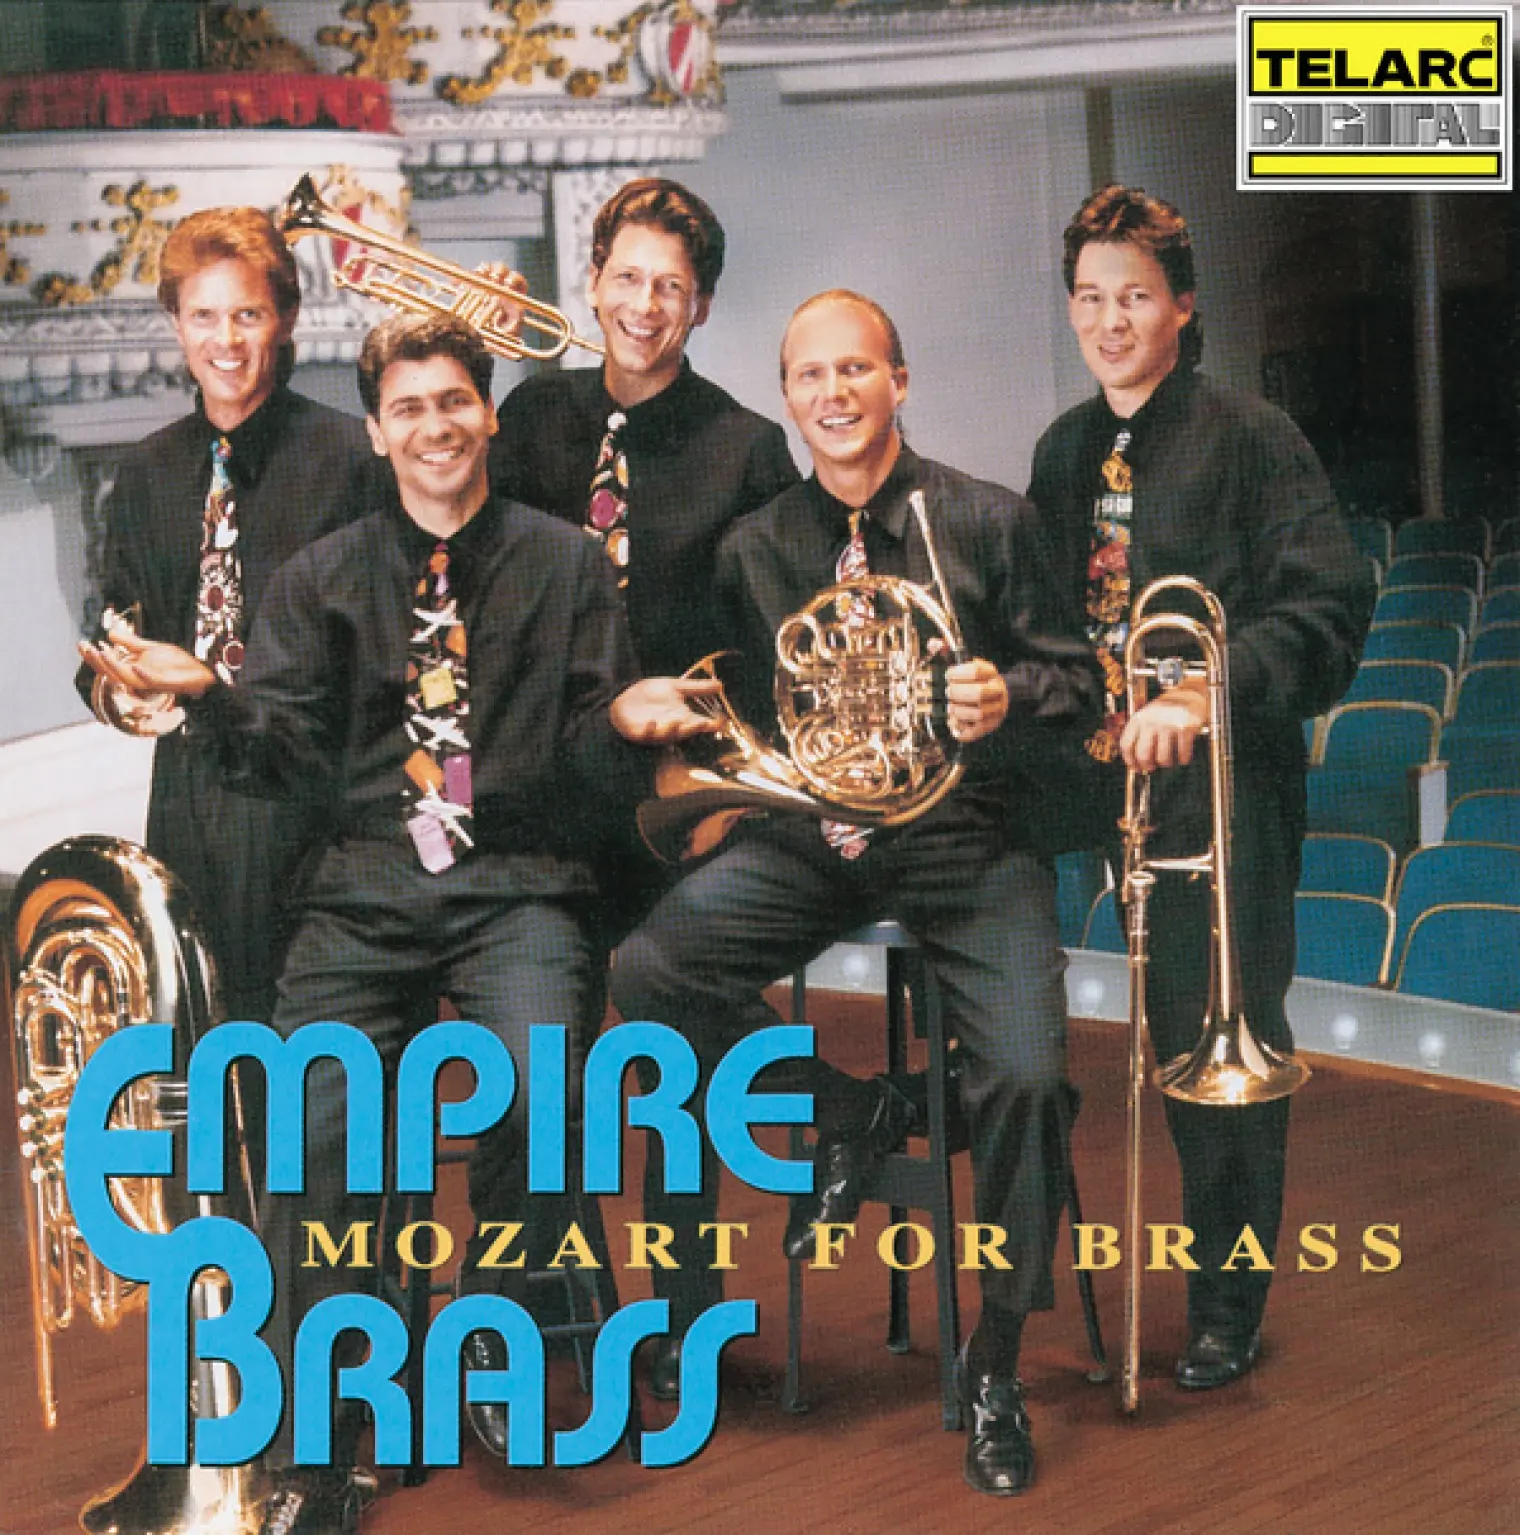 Mozart for Brass -  Empire Brass 